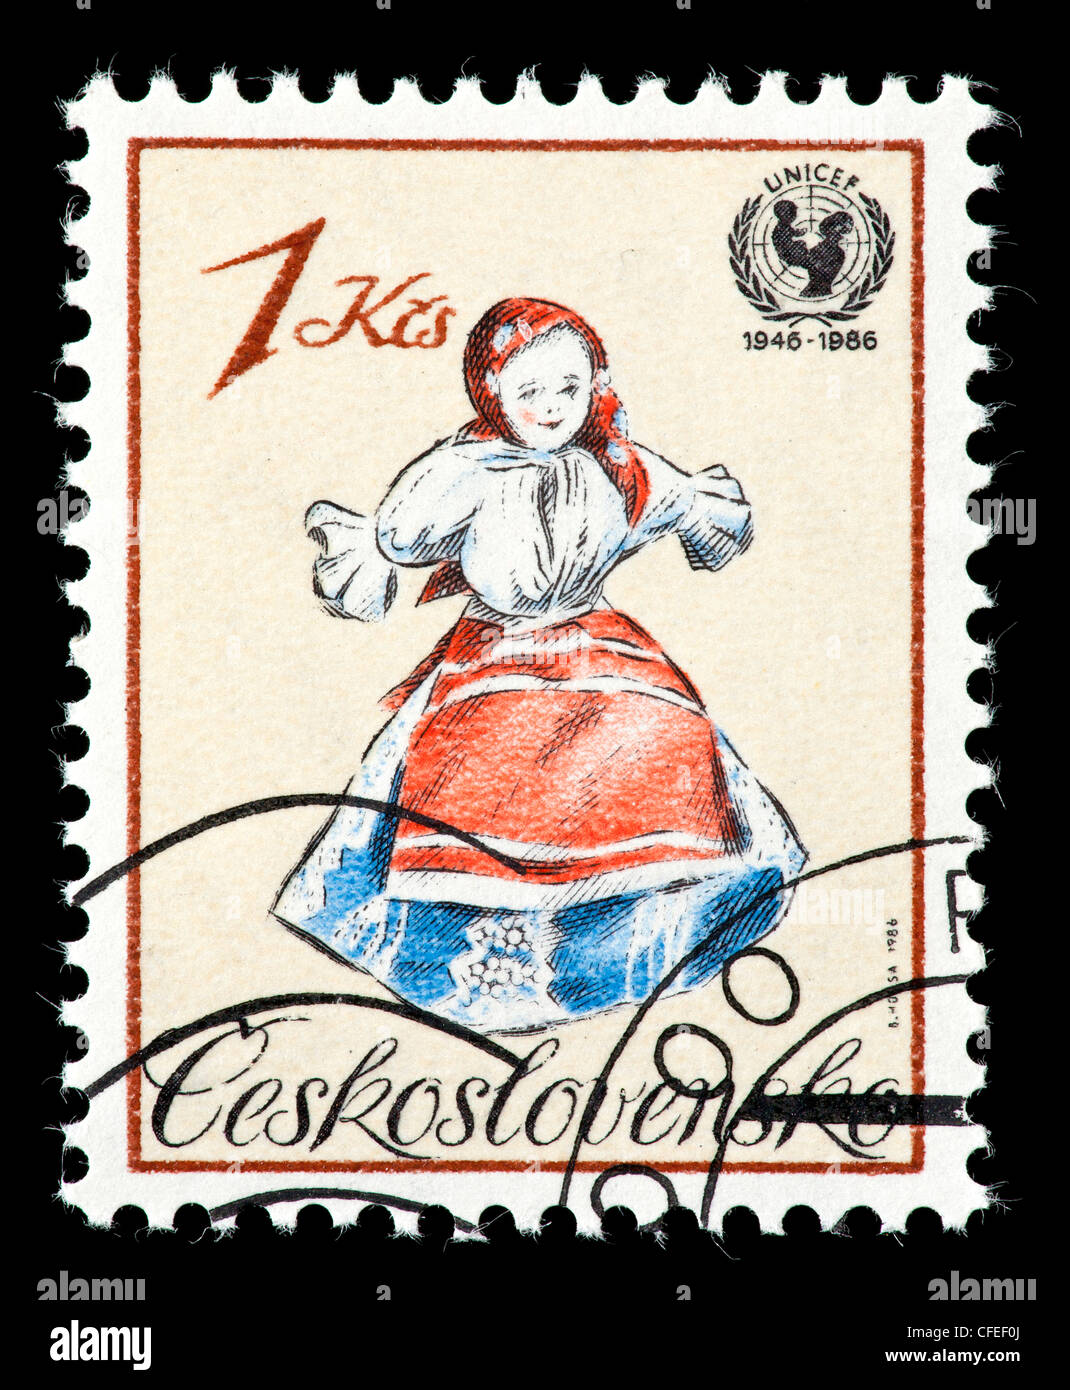 Sello de Checoslovaquia representando una muñeca, publicado por la campaña de supervivencia infantil de UNICEF. Foto de stock